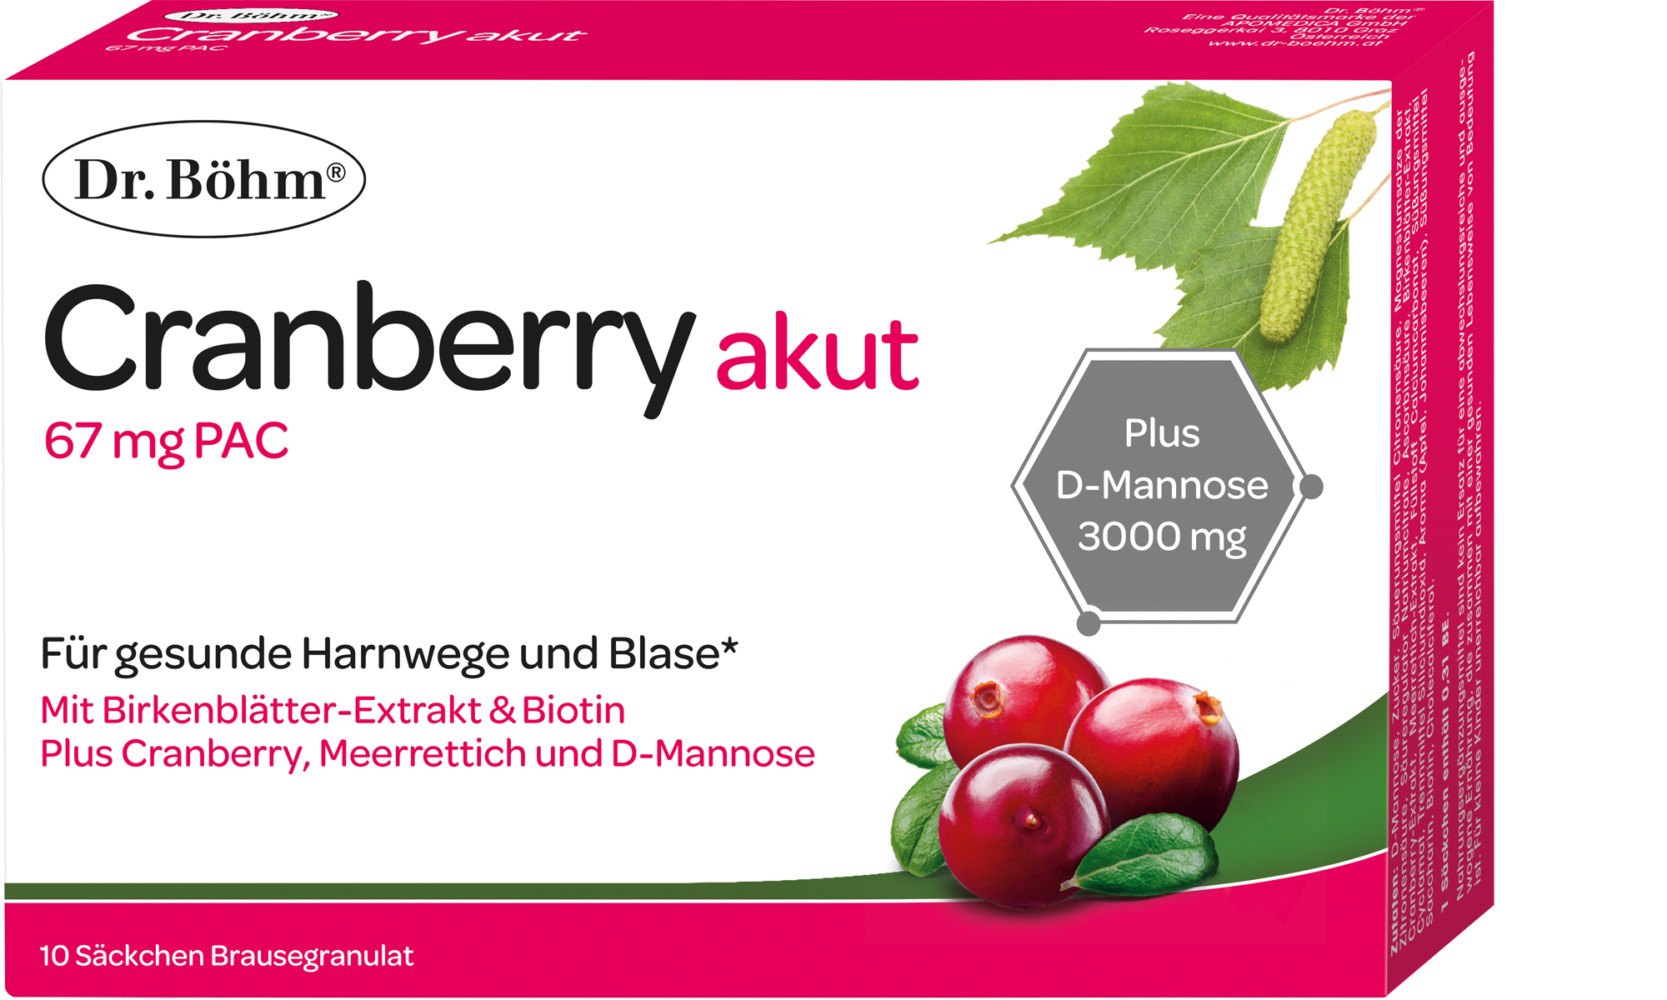 Dr. Böhm® Cranberry akut für gesunde Harnwege und Blase